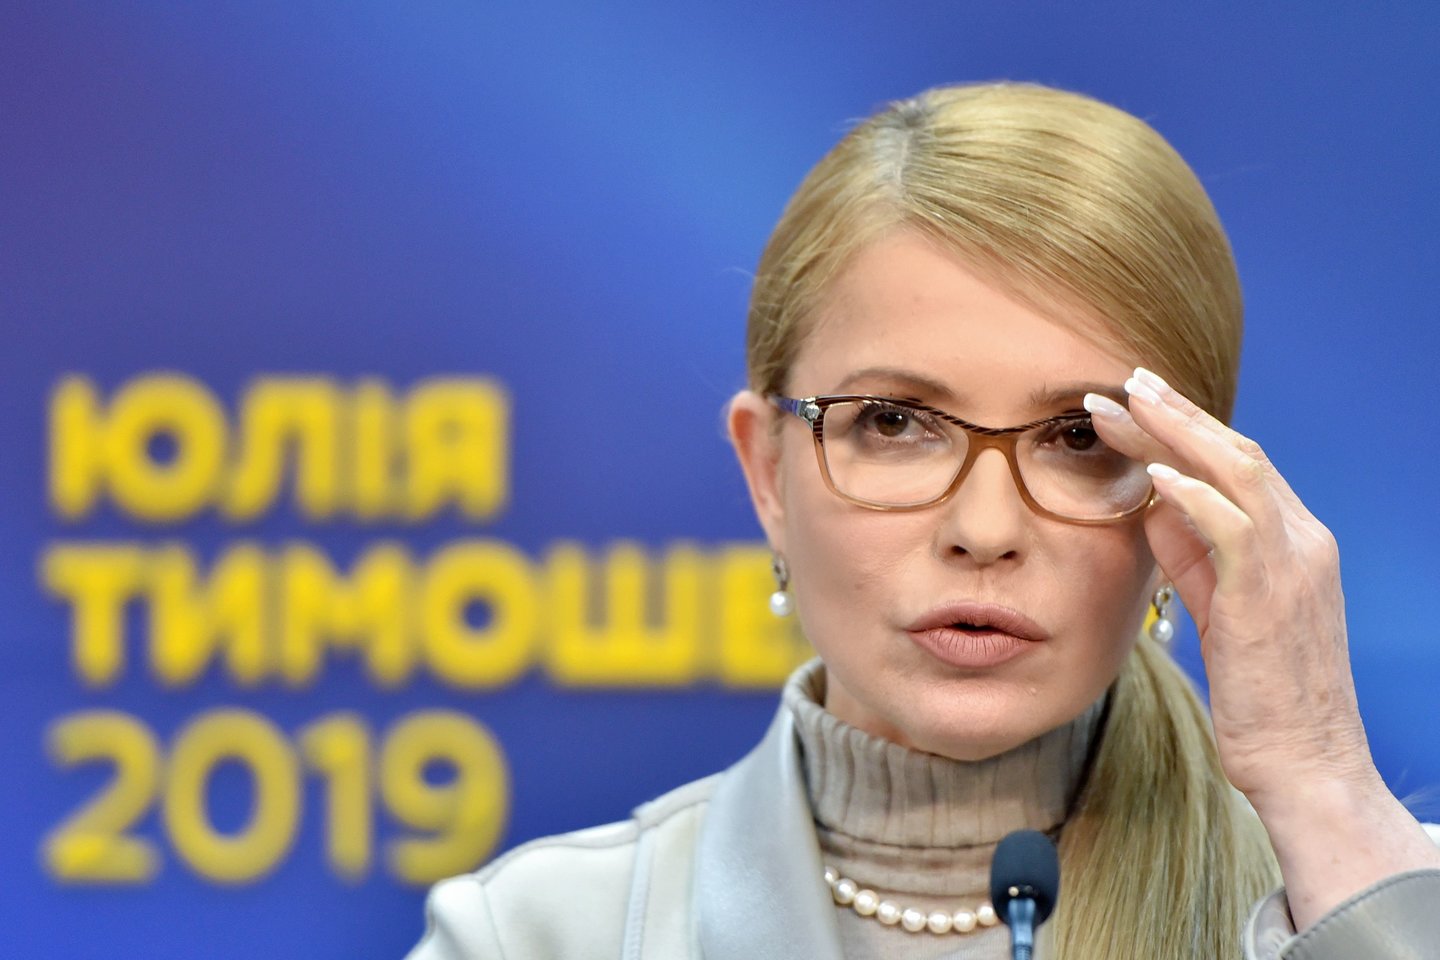 1960 m. gimė Ukrainos politikė ir valstybės veikėja, verslininkė, Oranžinės revoliucijos viena lyderių Julija Tymošenko.<br>Scanpix nuotr.